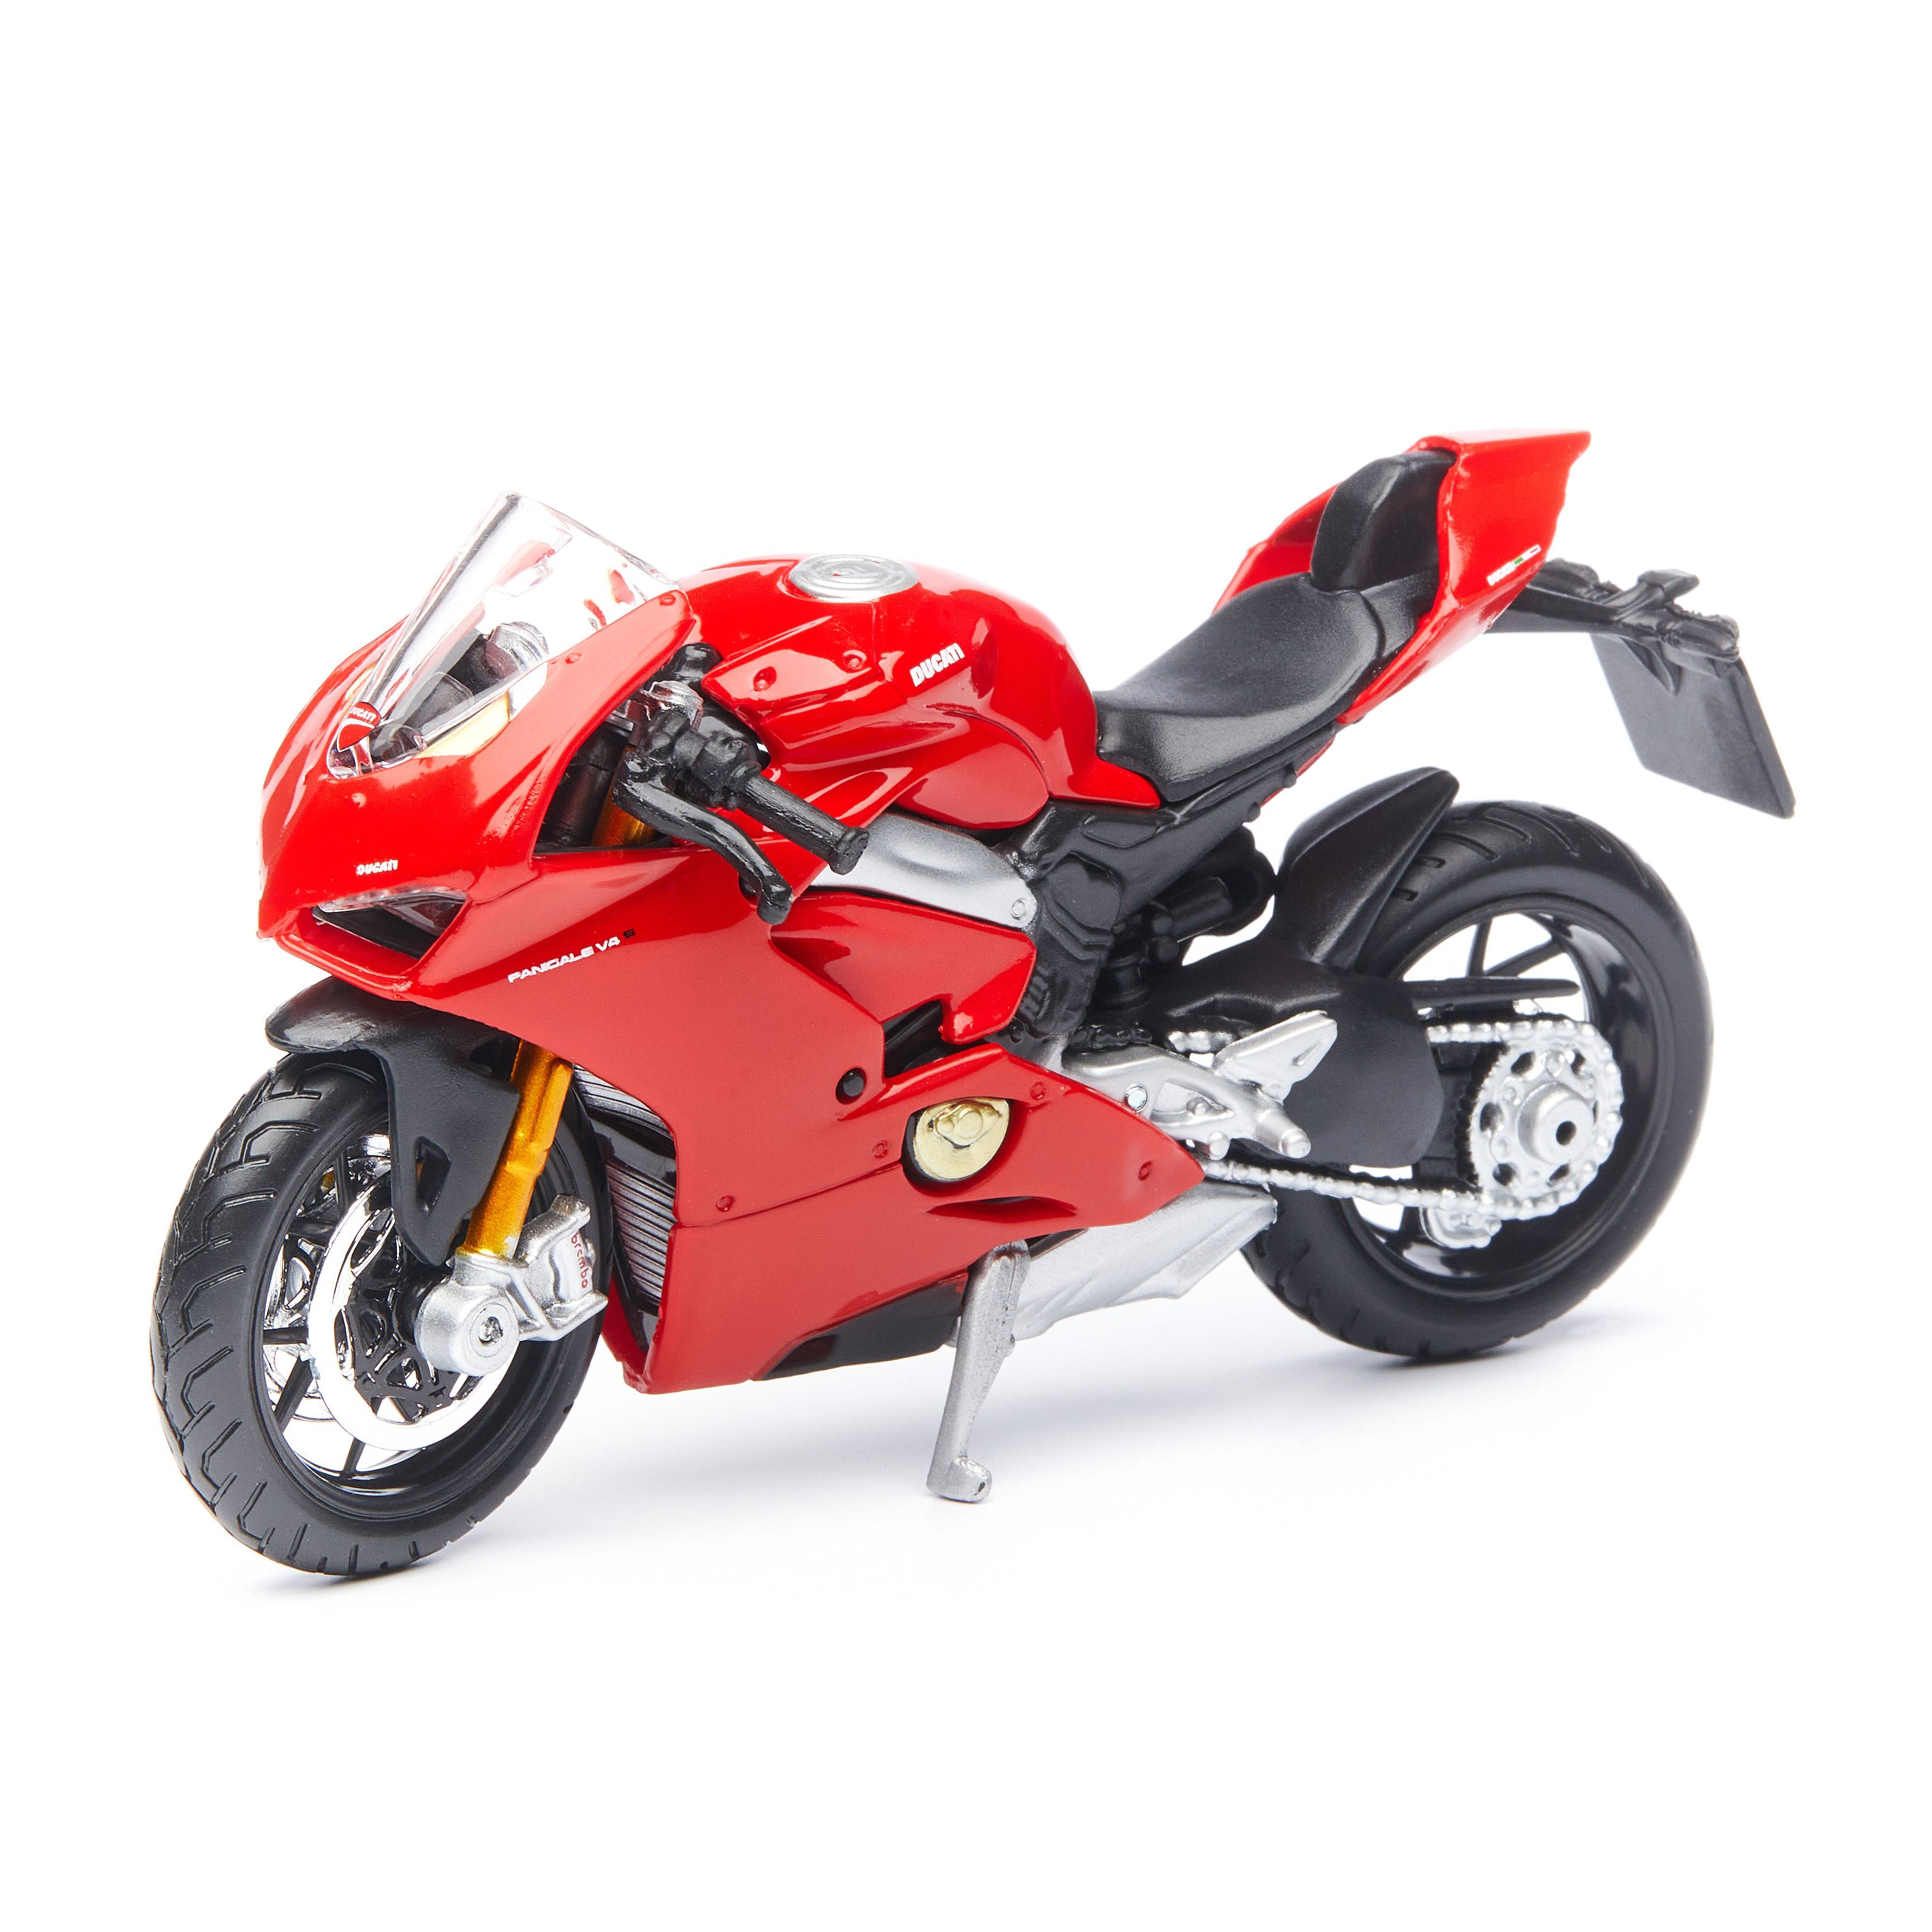 Мотоцикл Bburago масштабная модель Ducati  Panigale V4, 1:18 коллекционная модель автомобиля bburago chevrolet volt масштаб 1 32 18 43000 volt